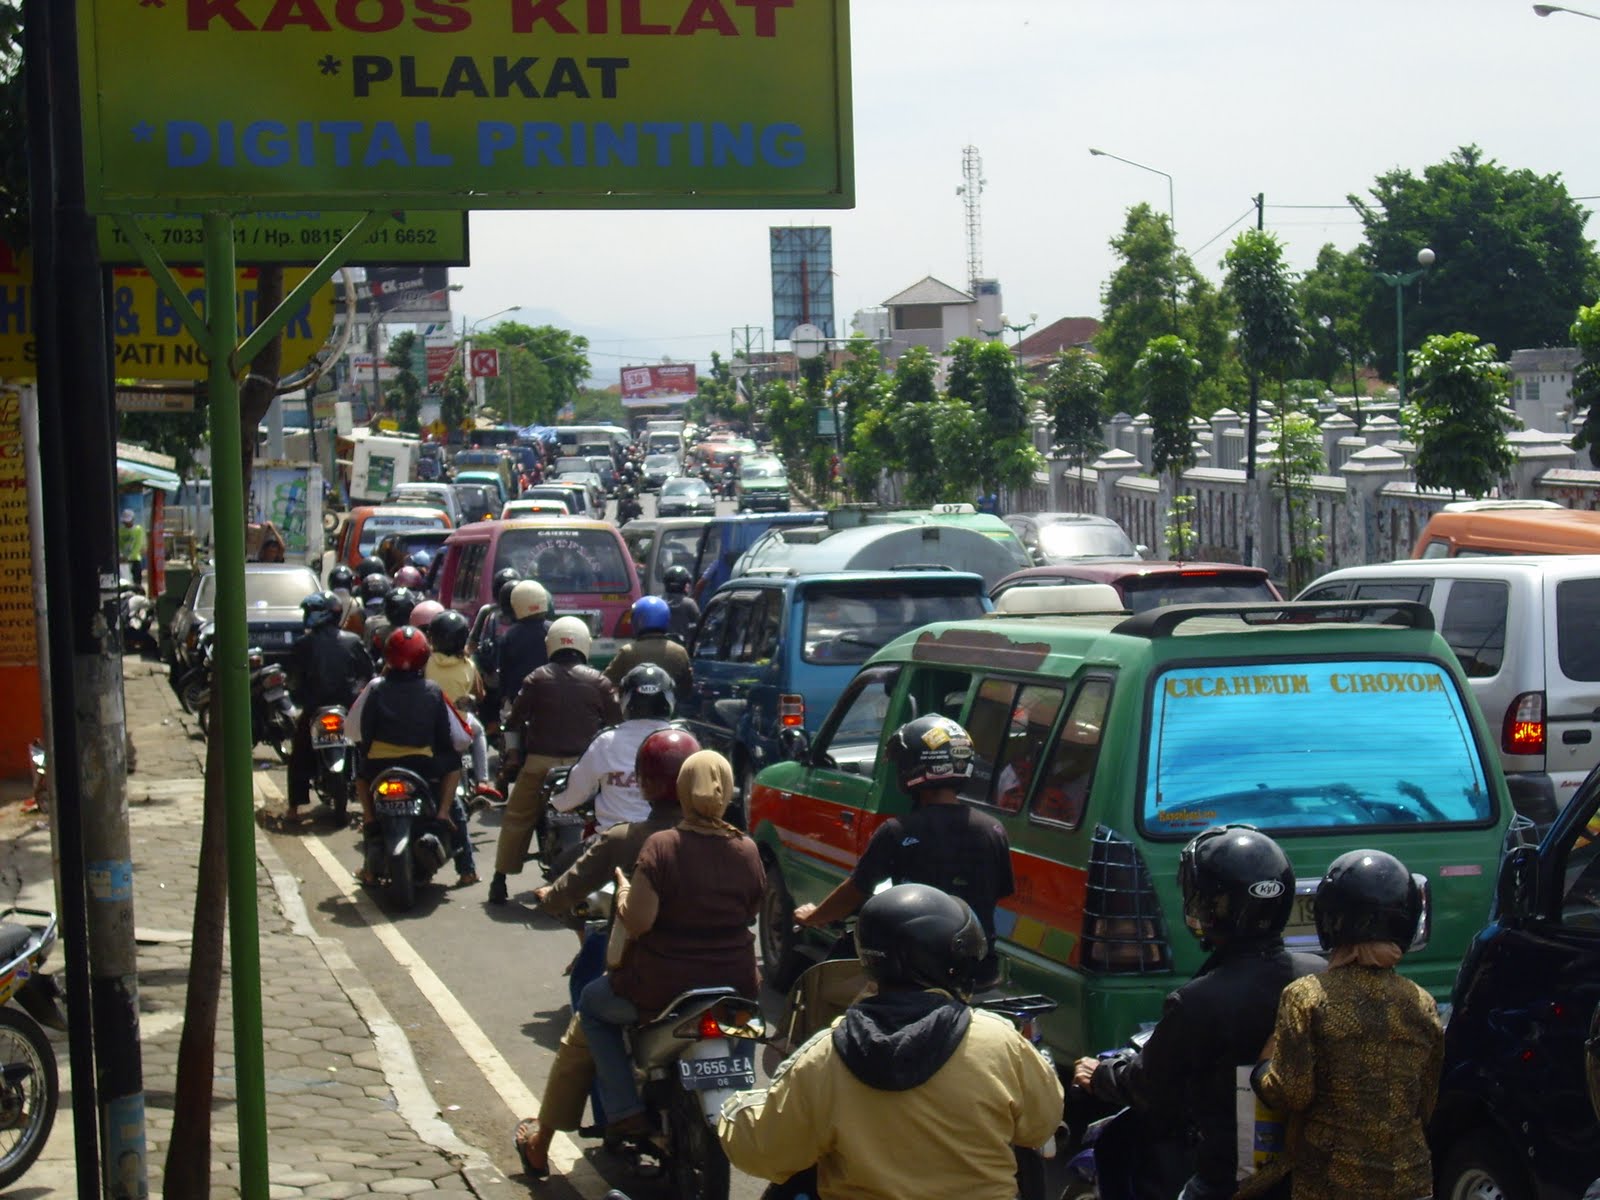 Gak Cuma Jakarta Yang Macet (foto-foto macet di beberapa kota di Indonesia gan)